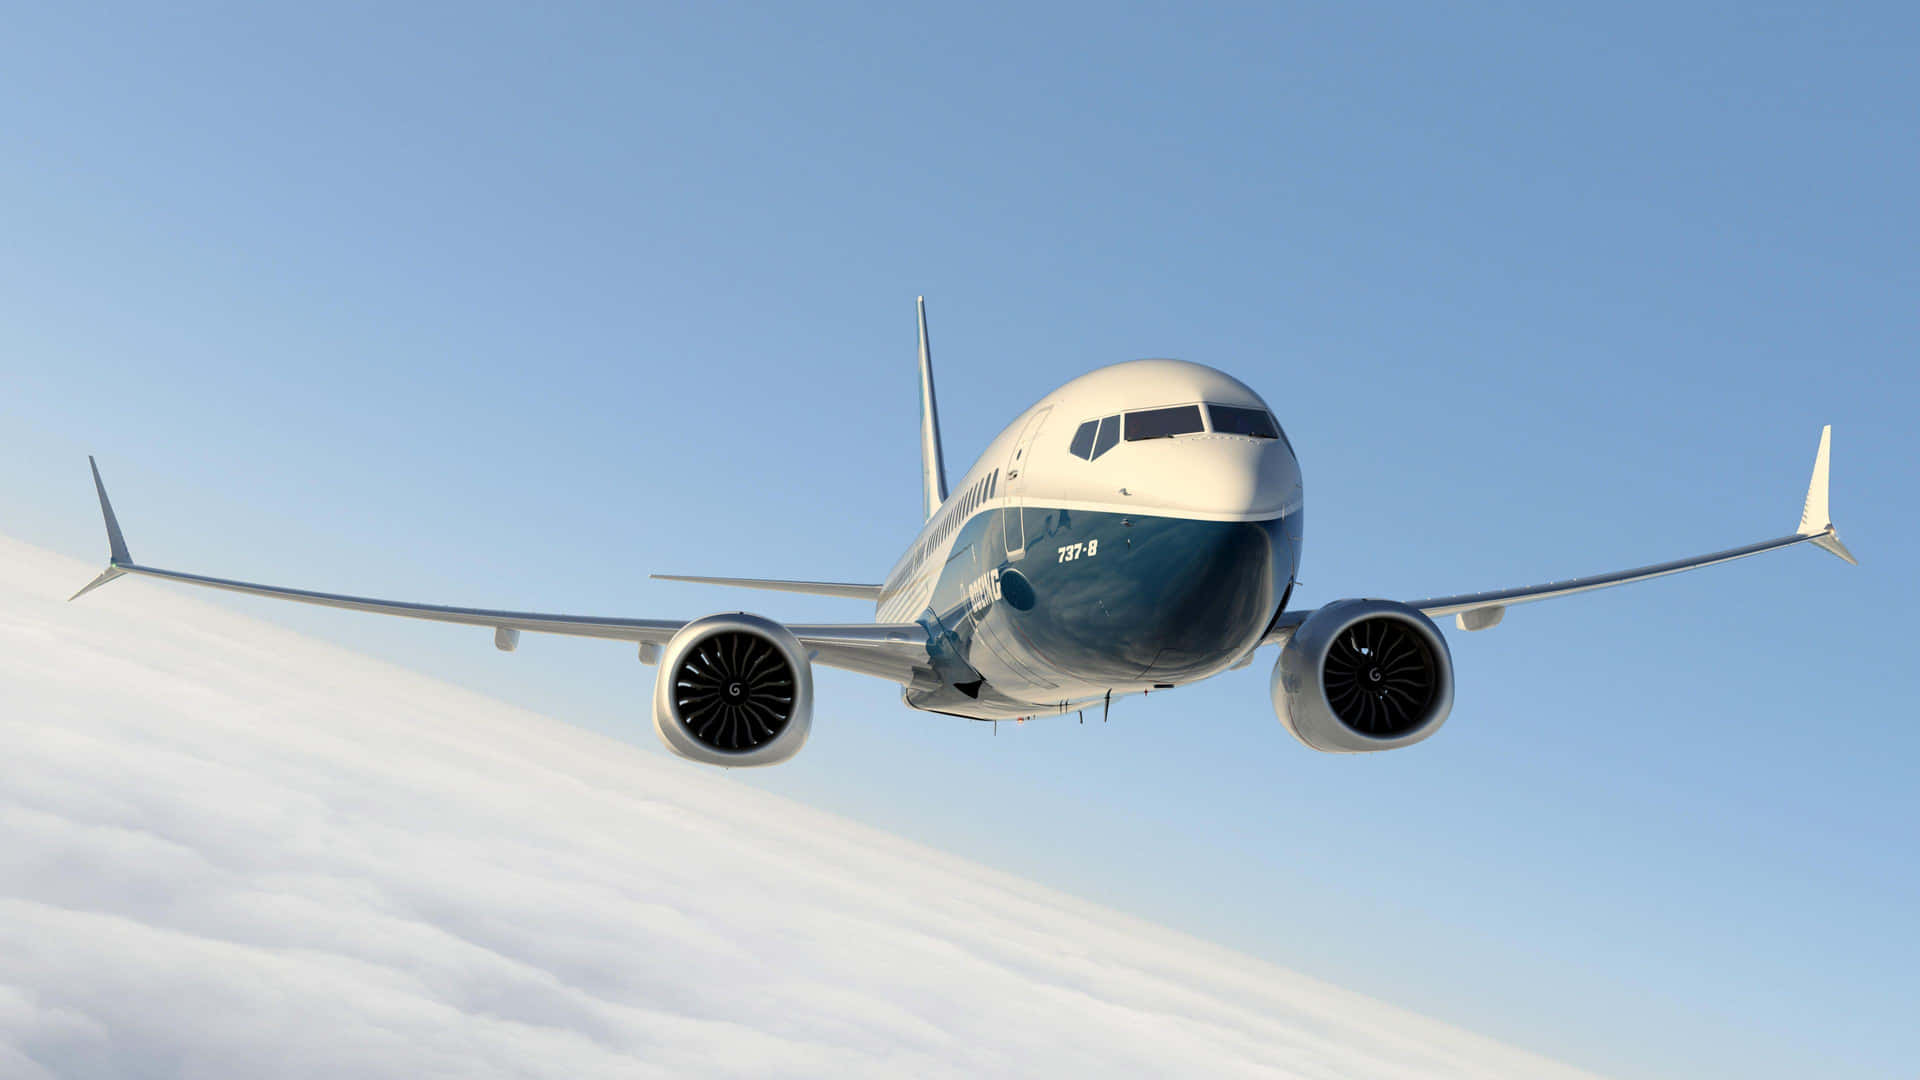 Boeing737 Midflight Over Clouds Wallpaper